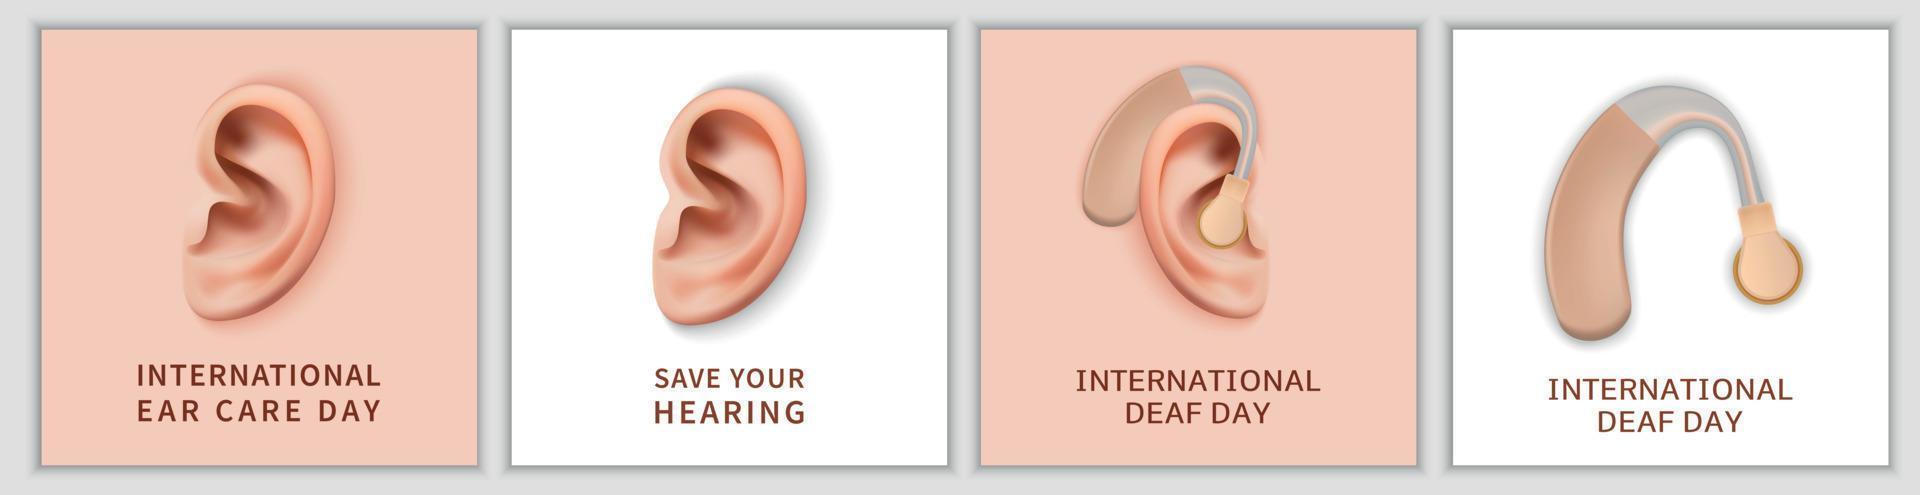 conjunto de pancartas del día internacional del sordo, estilo realista vector